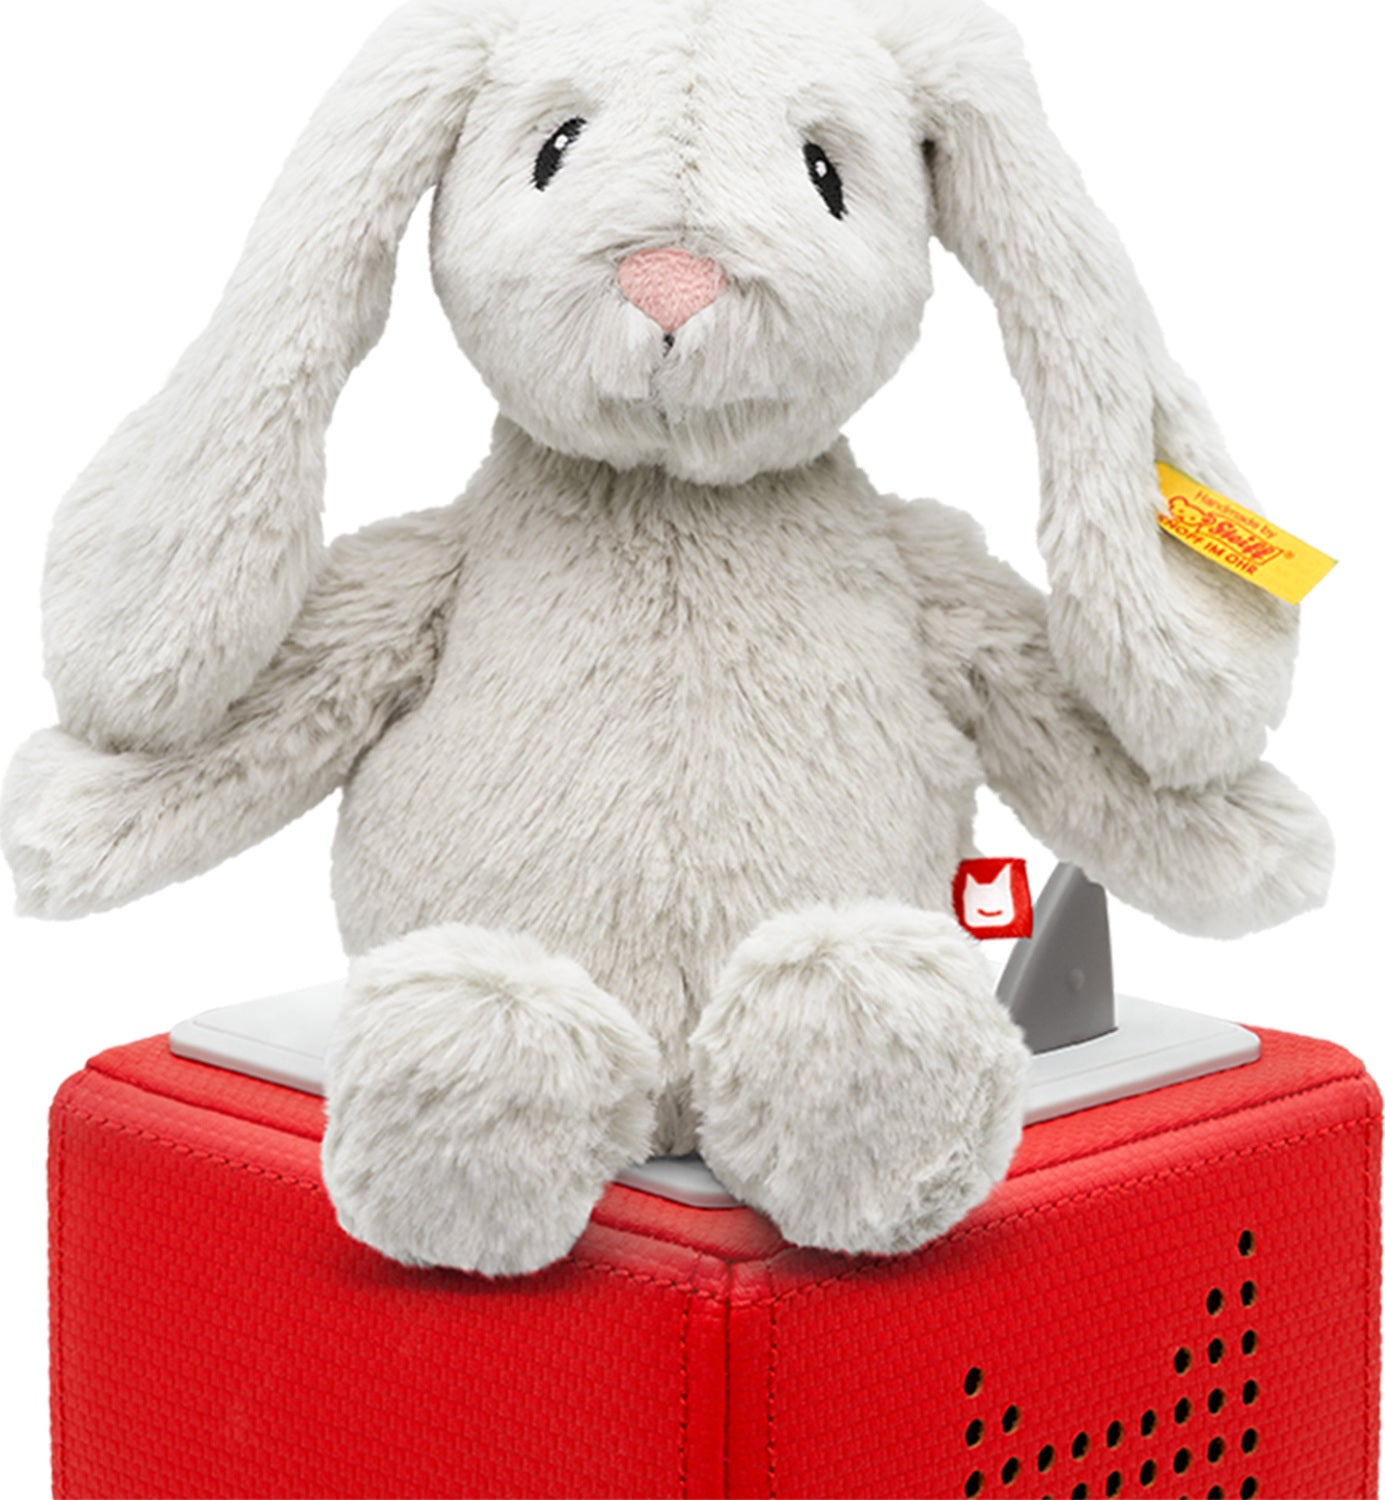 tonies - Steiff Soft Cuddly Friends: Hoppie Rabbit